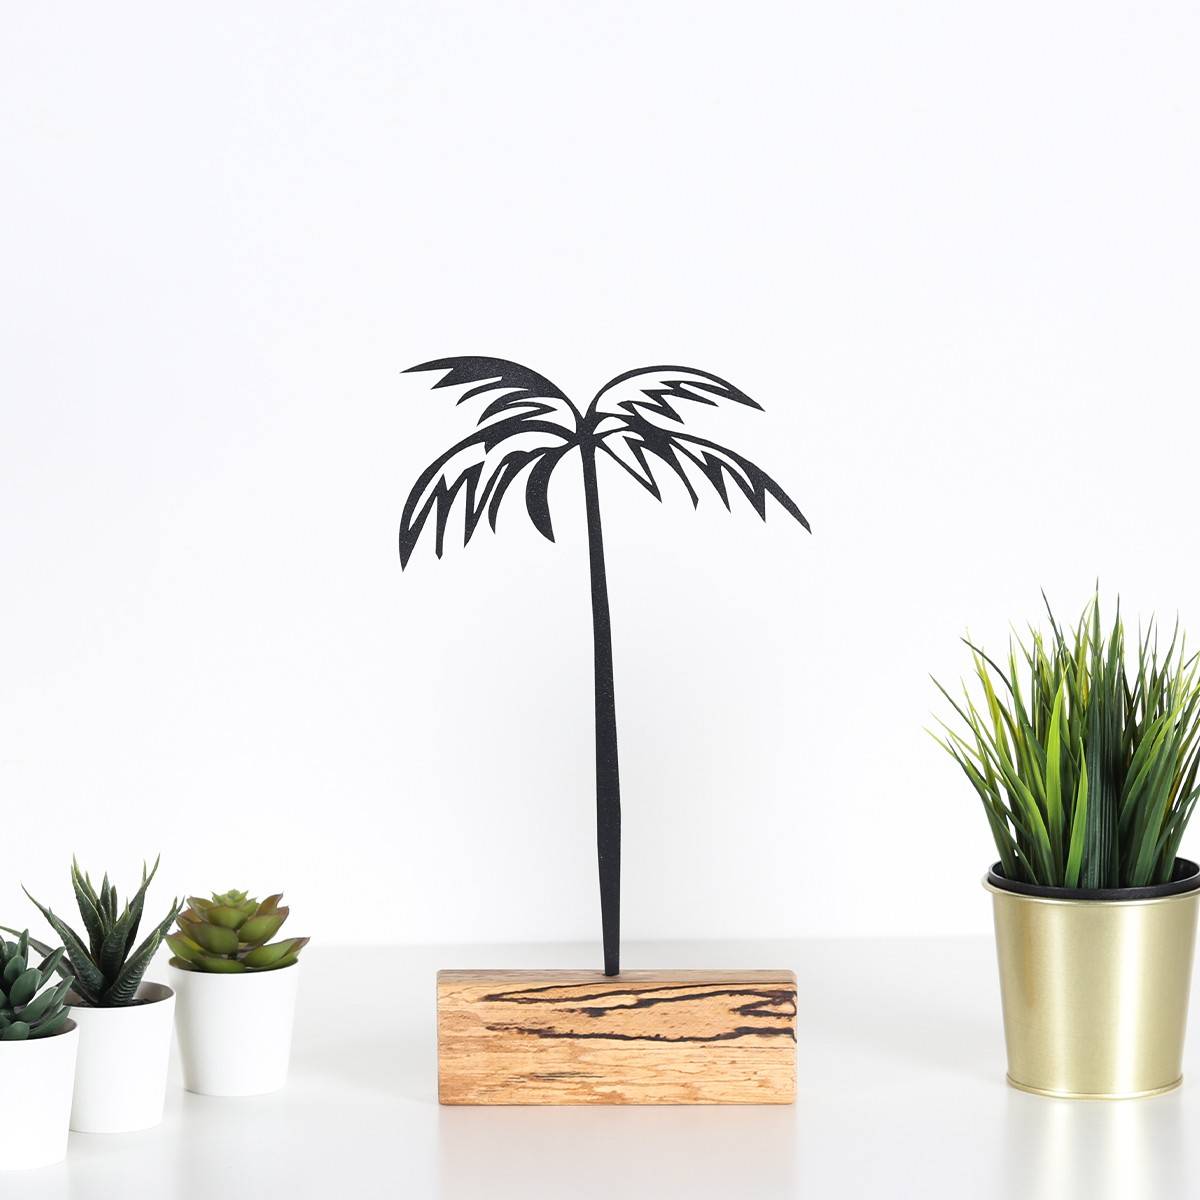 Objet décoratif à poser Approbatio cocotier palmier 35cm Métal Noir Socle Bois